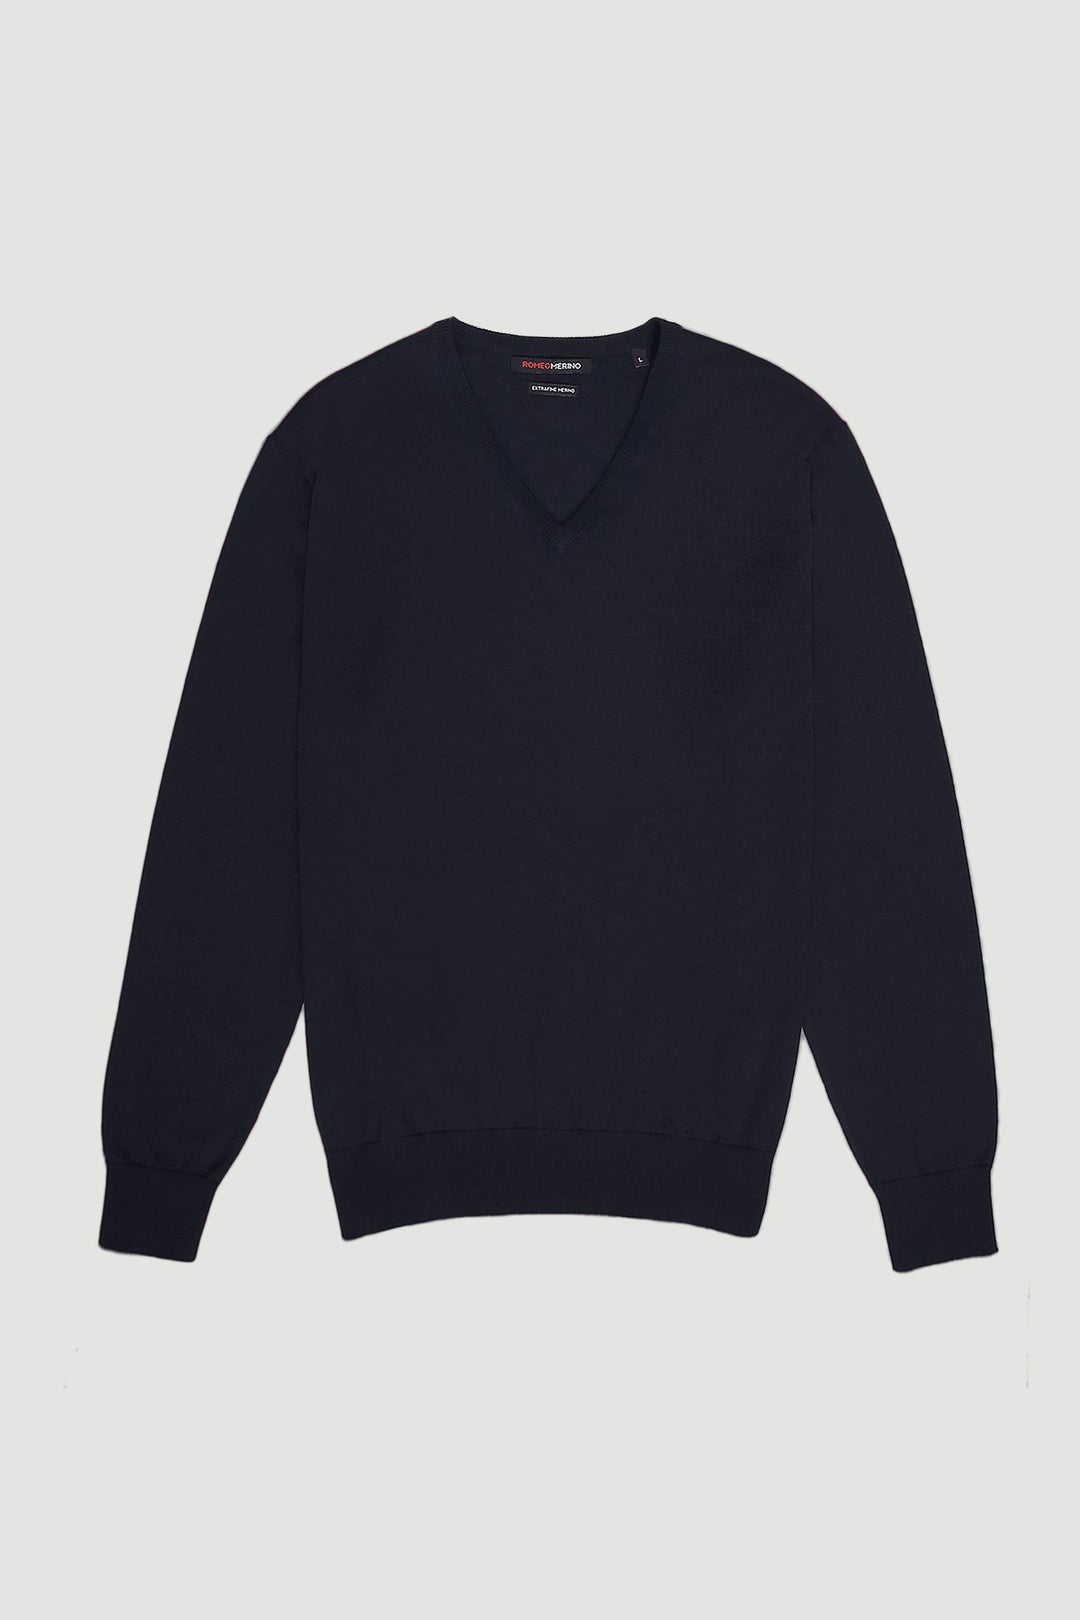 Merino Wool V-Neck Sweater|Men's Sweaters|ROMEO NYC